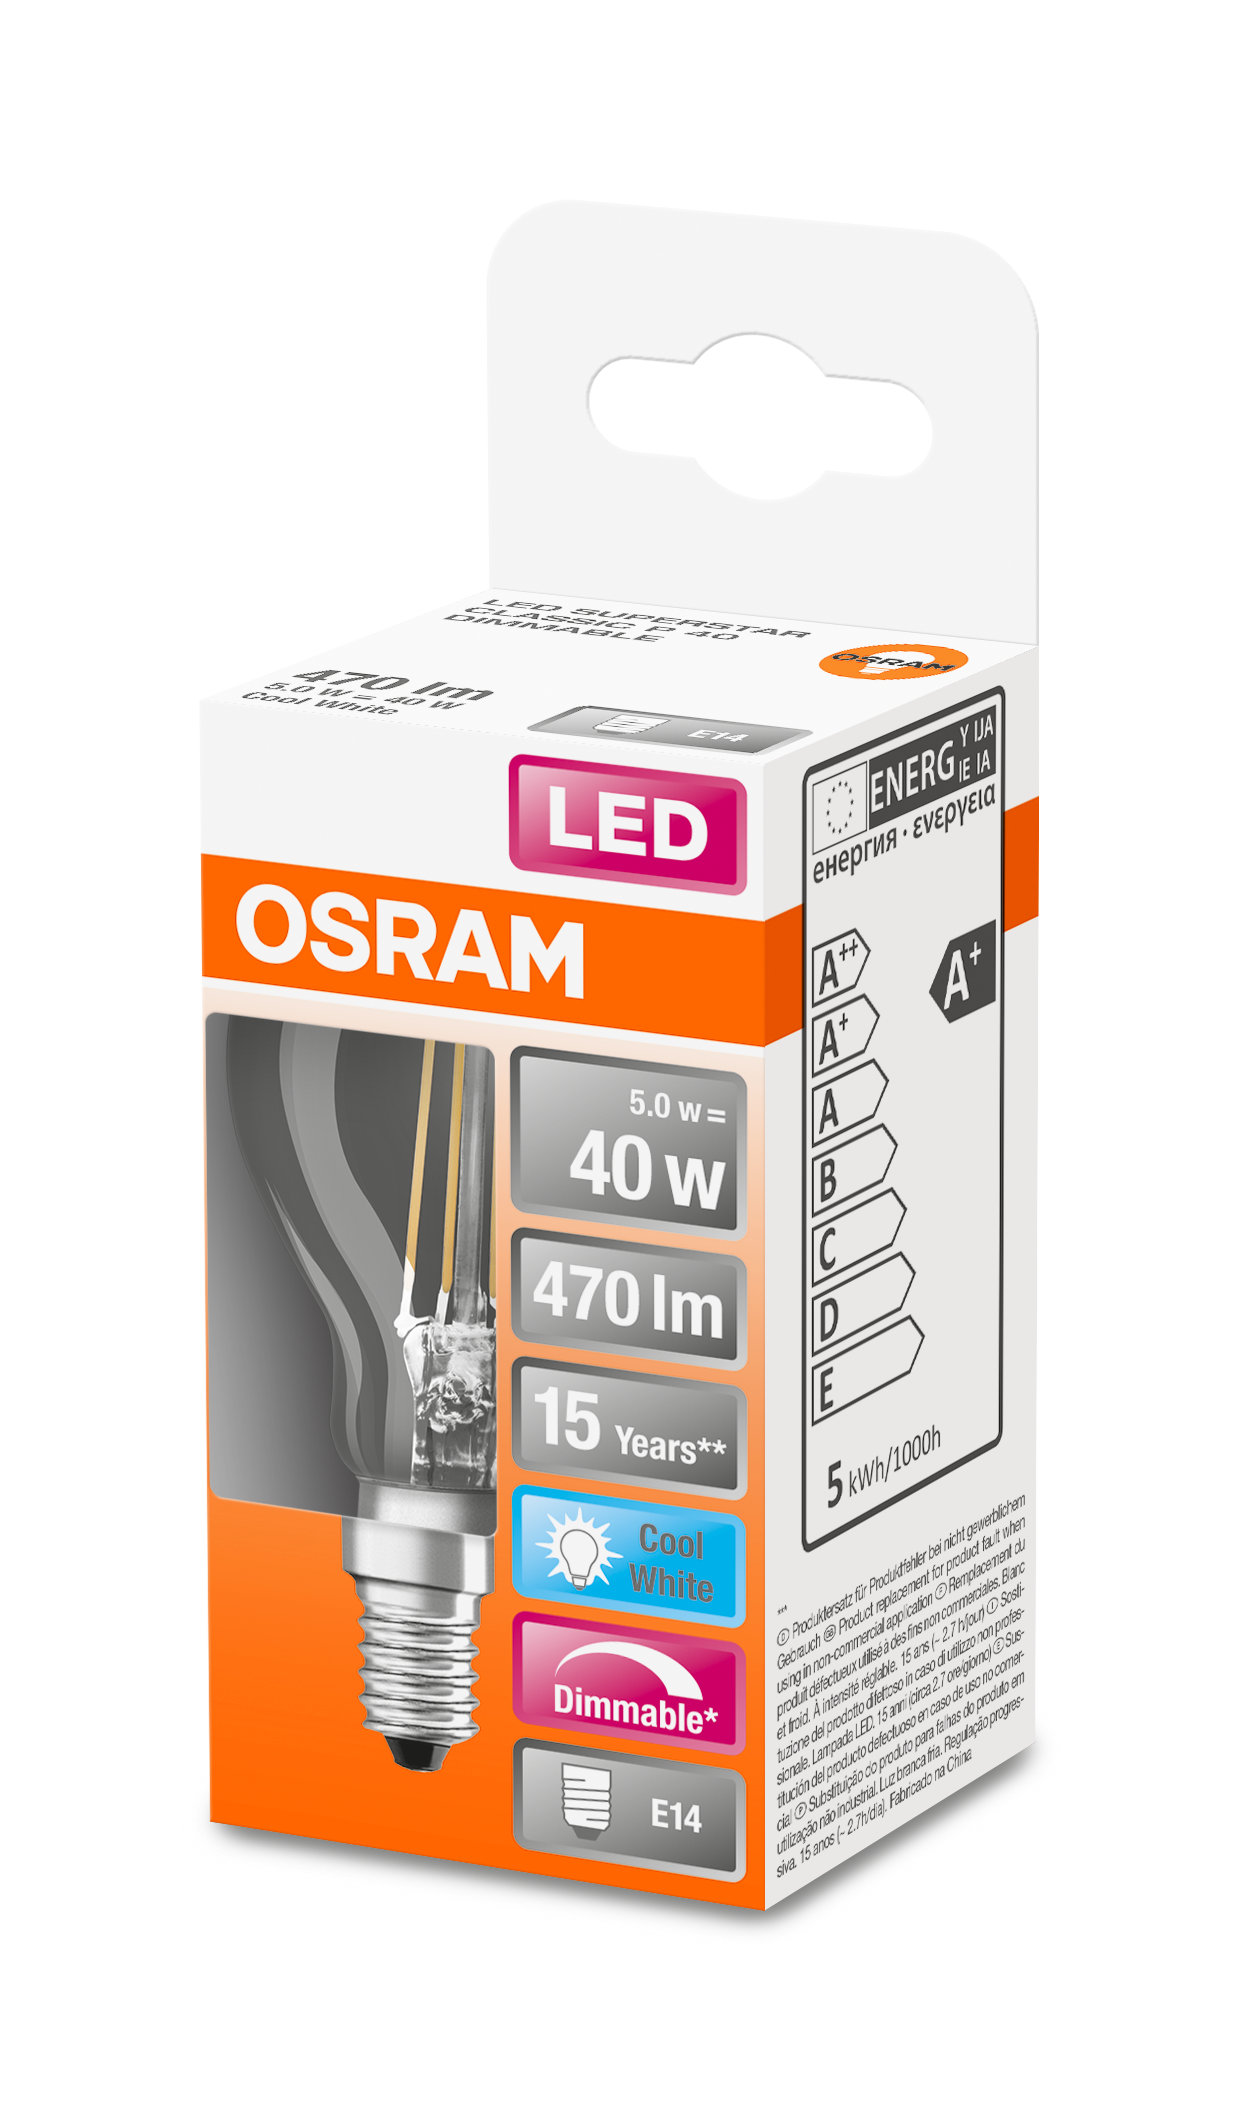 P Lampe CLASSIC Retrofit OSRAM  LED 470 LED Lumen Kaltweiß DIM